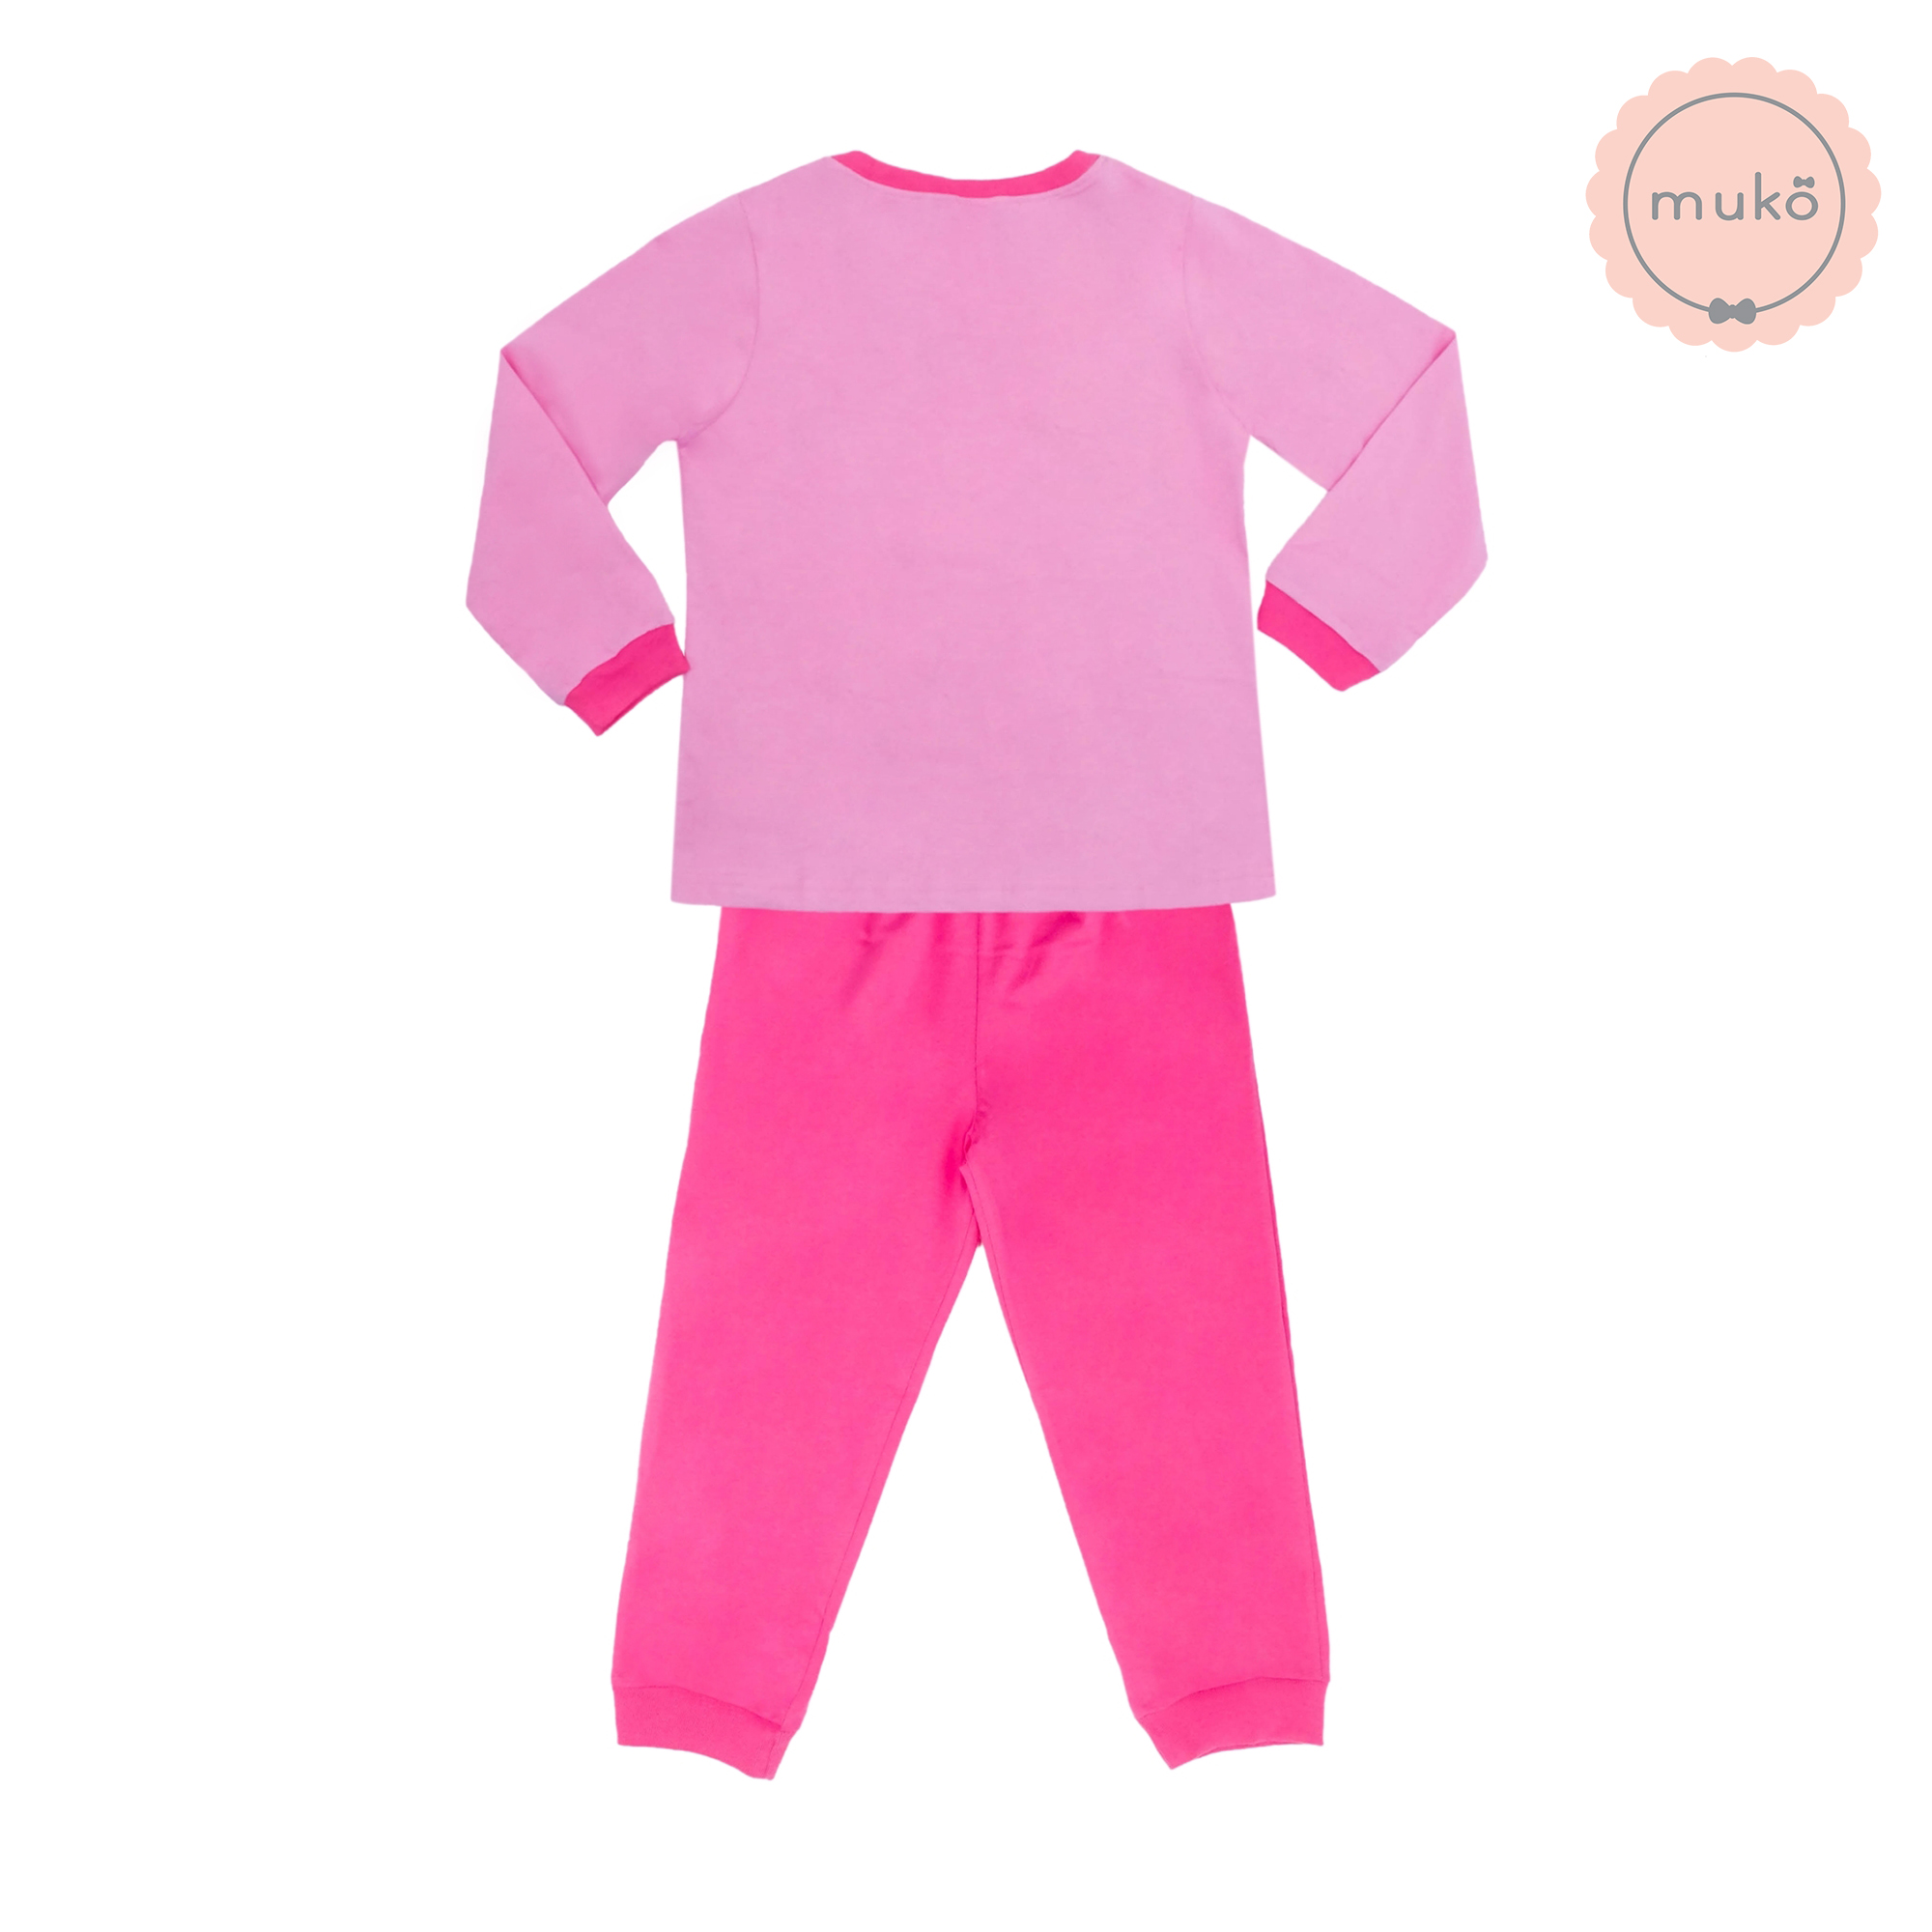 ชุดเด็ก 4-5 ขวบ แขนยาว-ขายาว (Size S) DPC127-03-XL-Pink S ลาย เจ้าหญิงเบลล์ Belle (เสื้อชมพูกางเกงชมพูเข้ม)